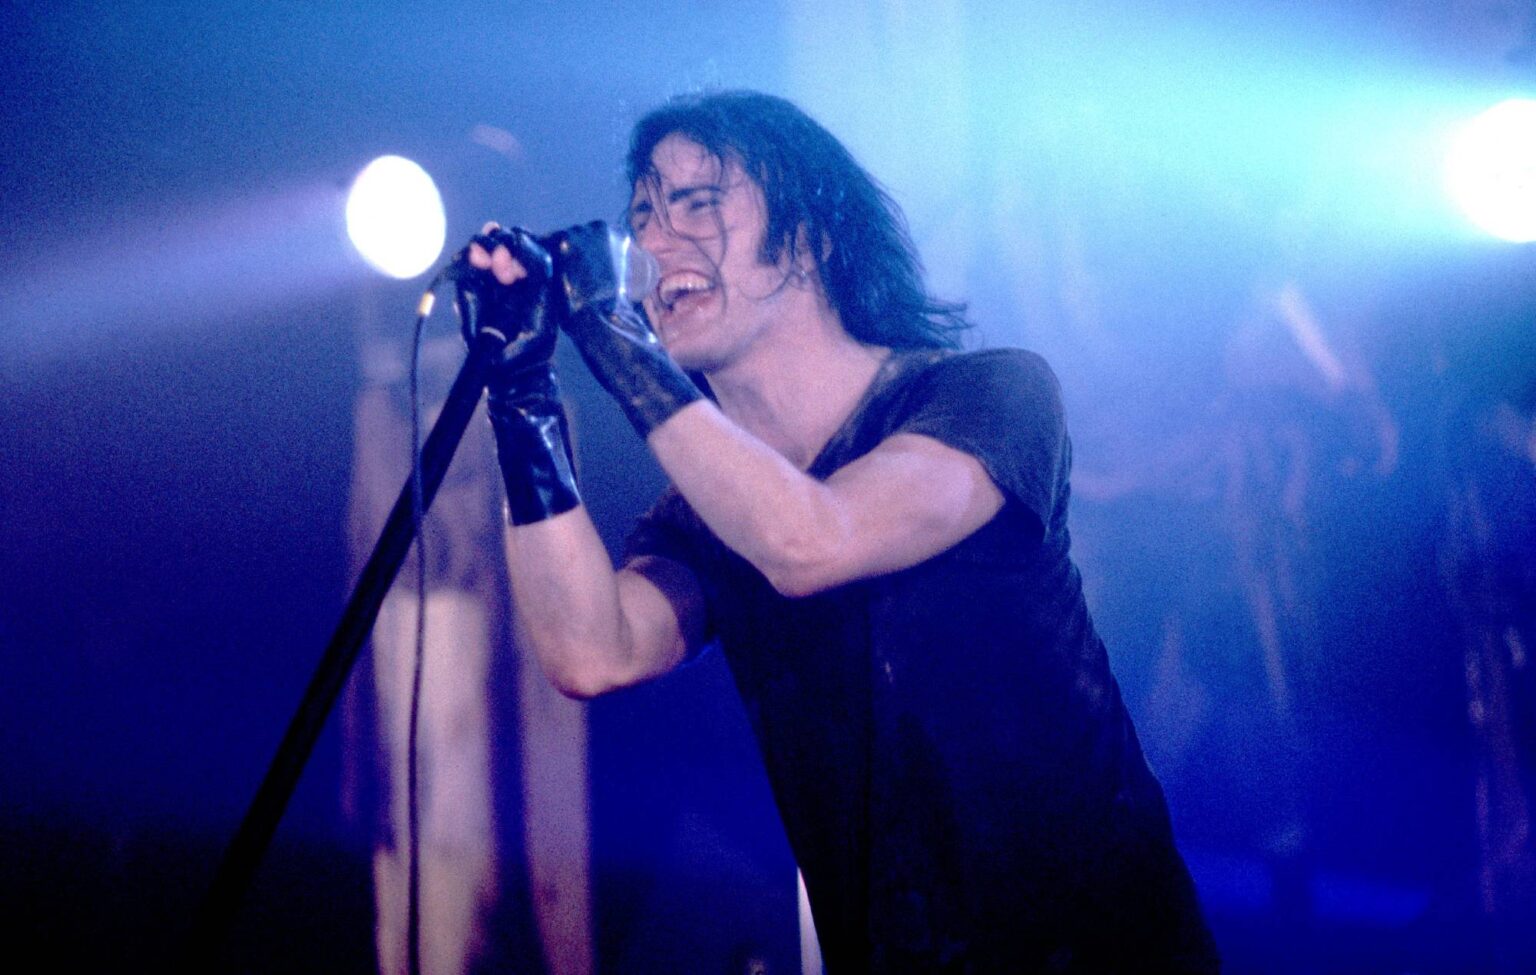 Crianças se tornam virais com cover de “Wish”, do Nine Inch Nails